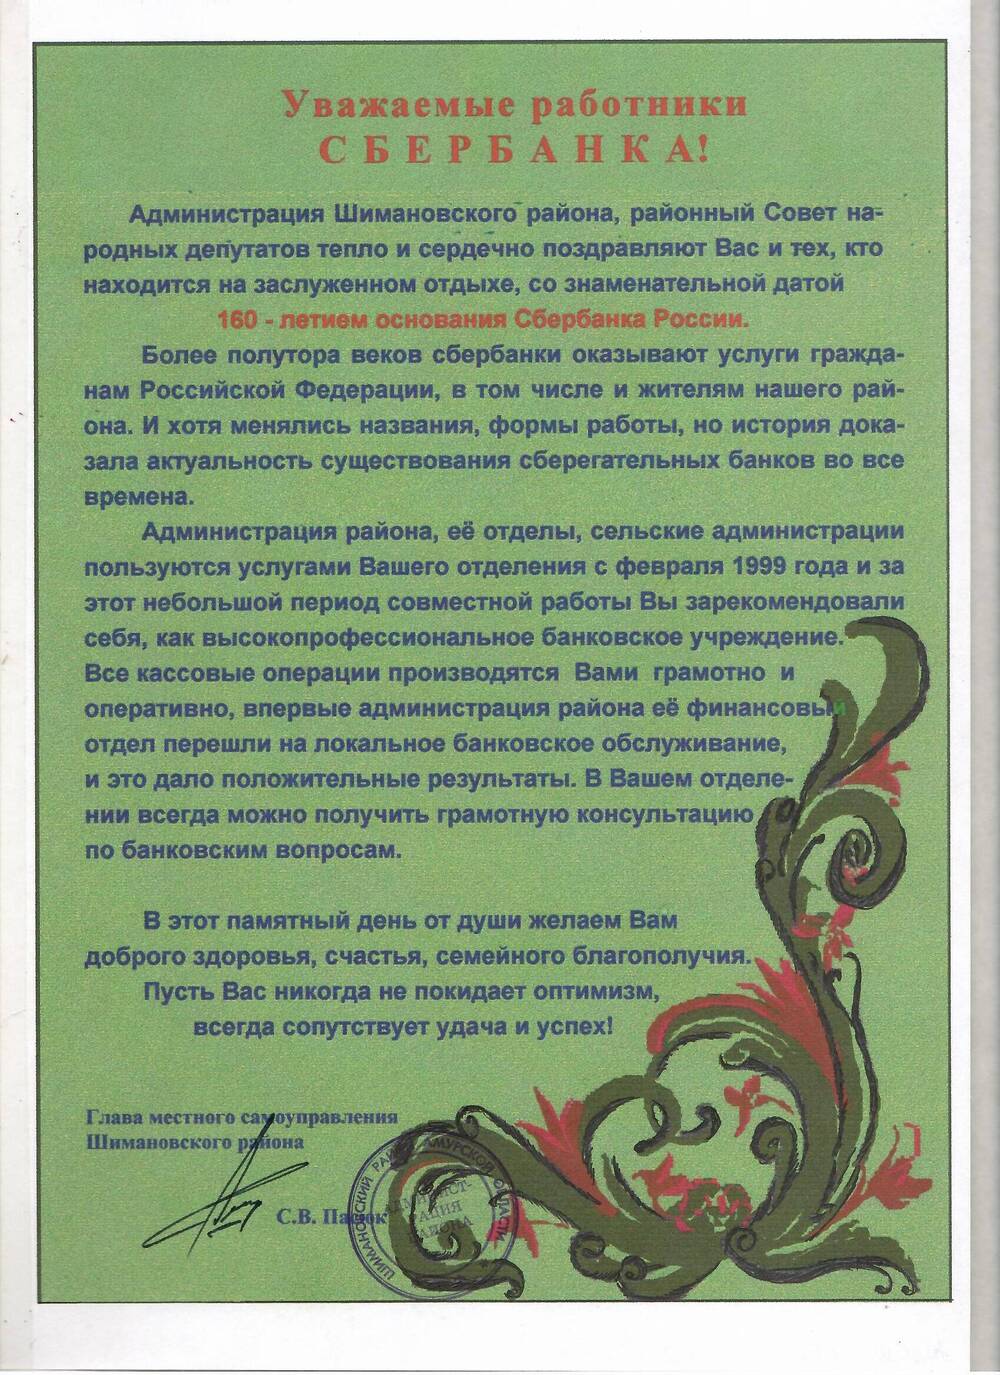 Поздравление работникам Сбербанка с 160-летием основания Сбербанка России